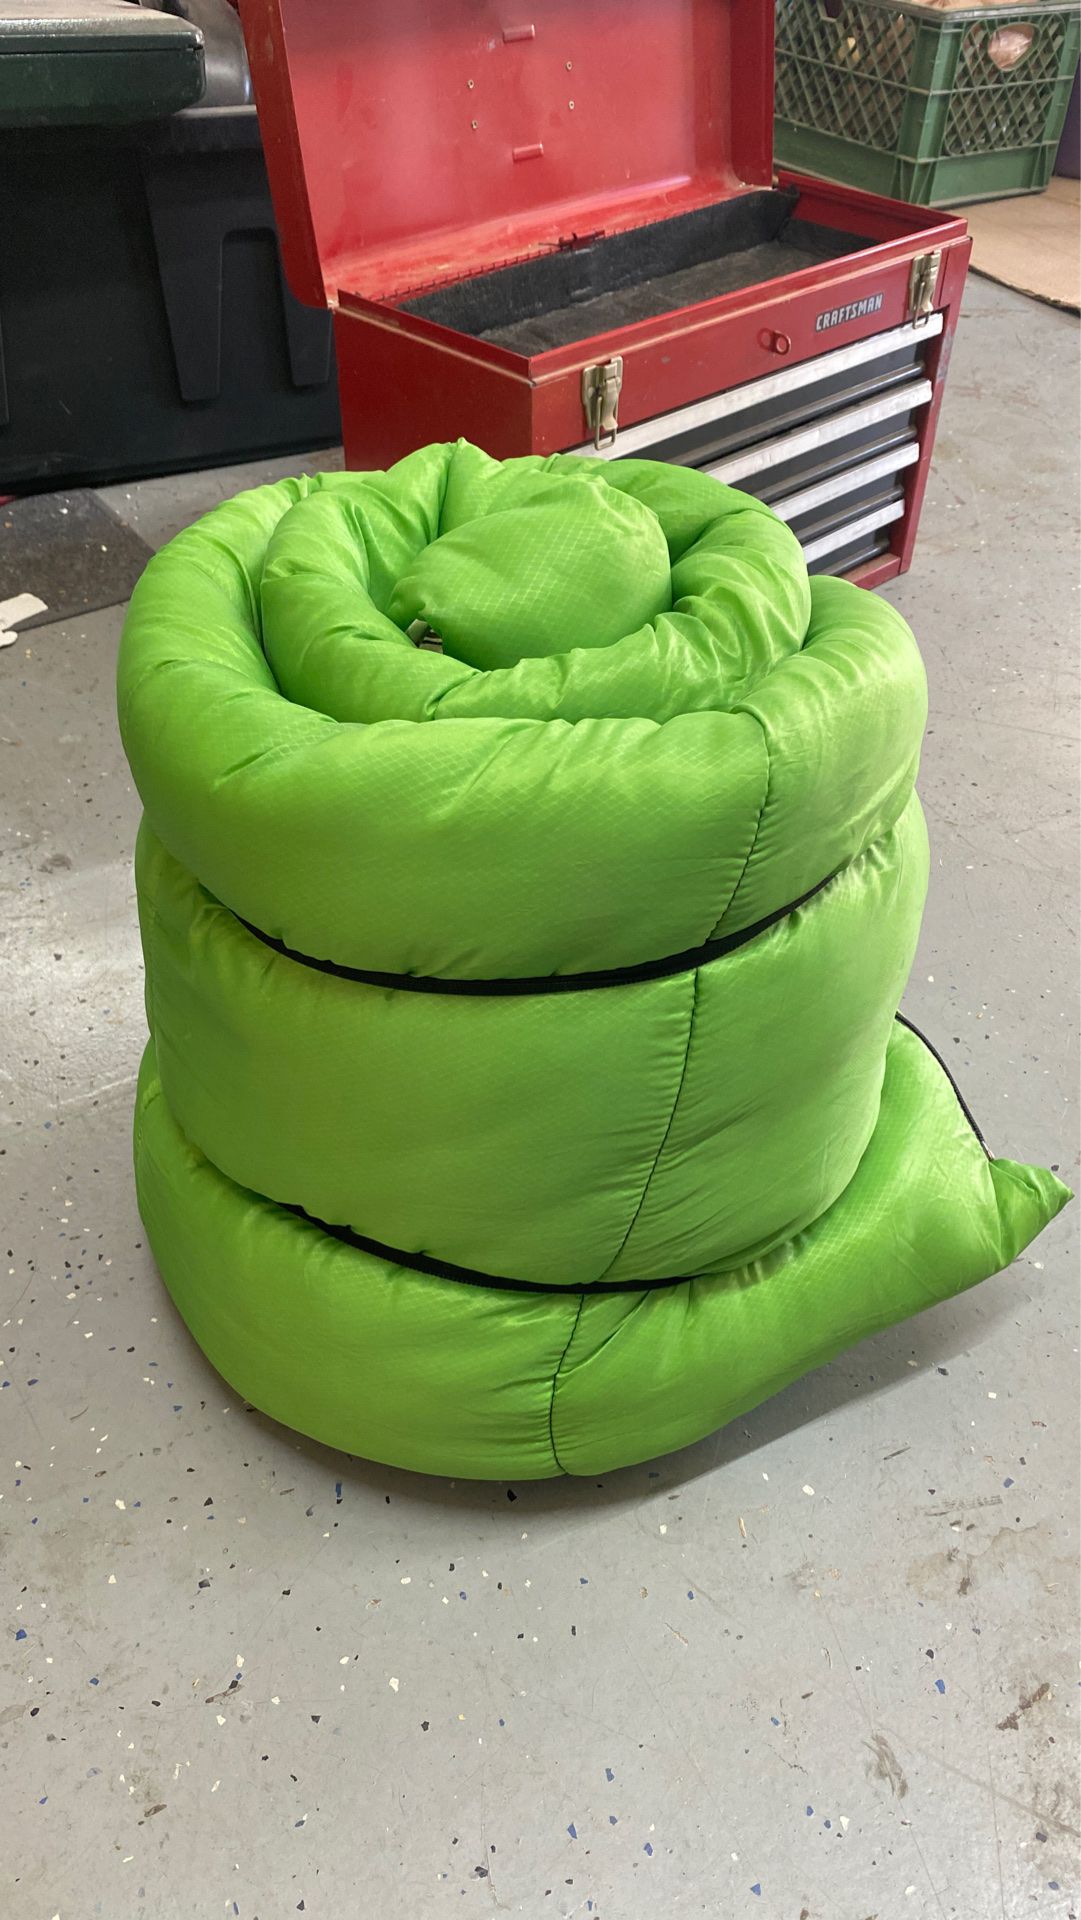 Green sleeping bag